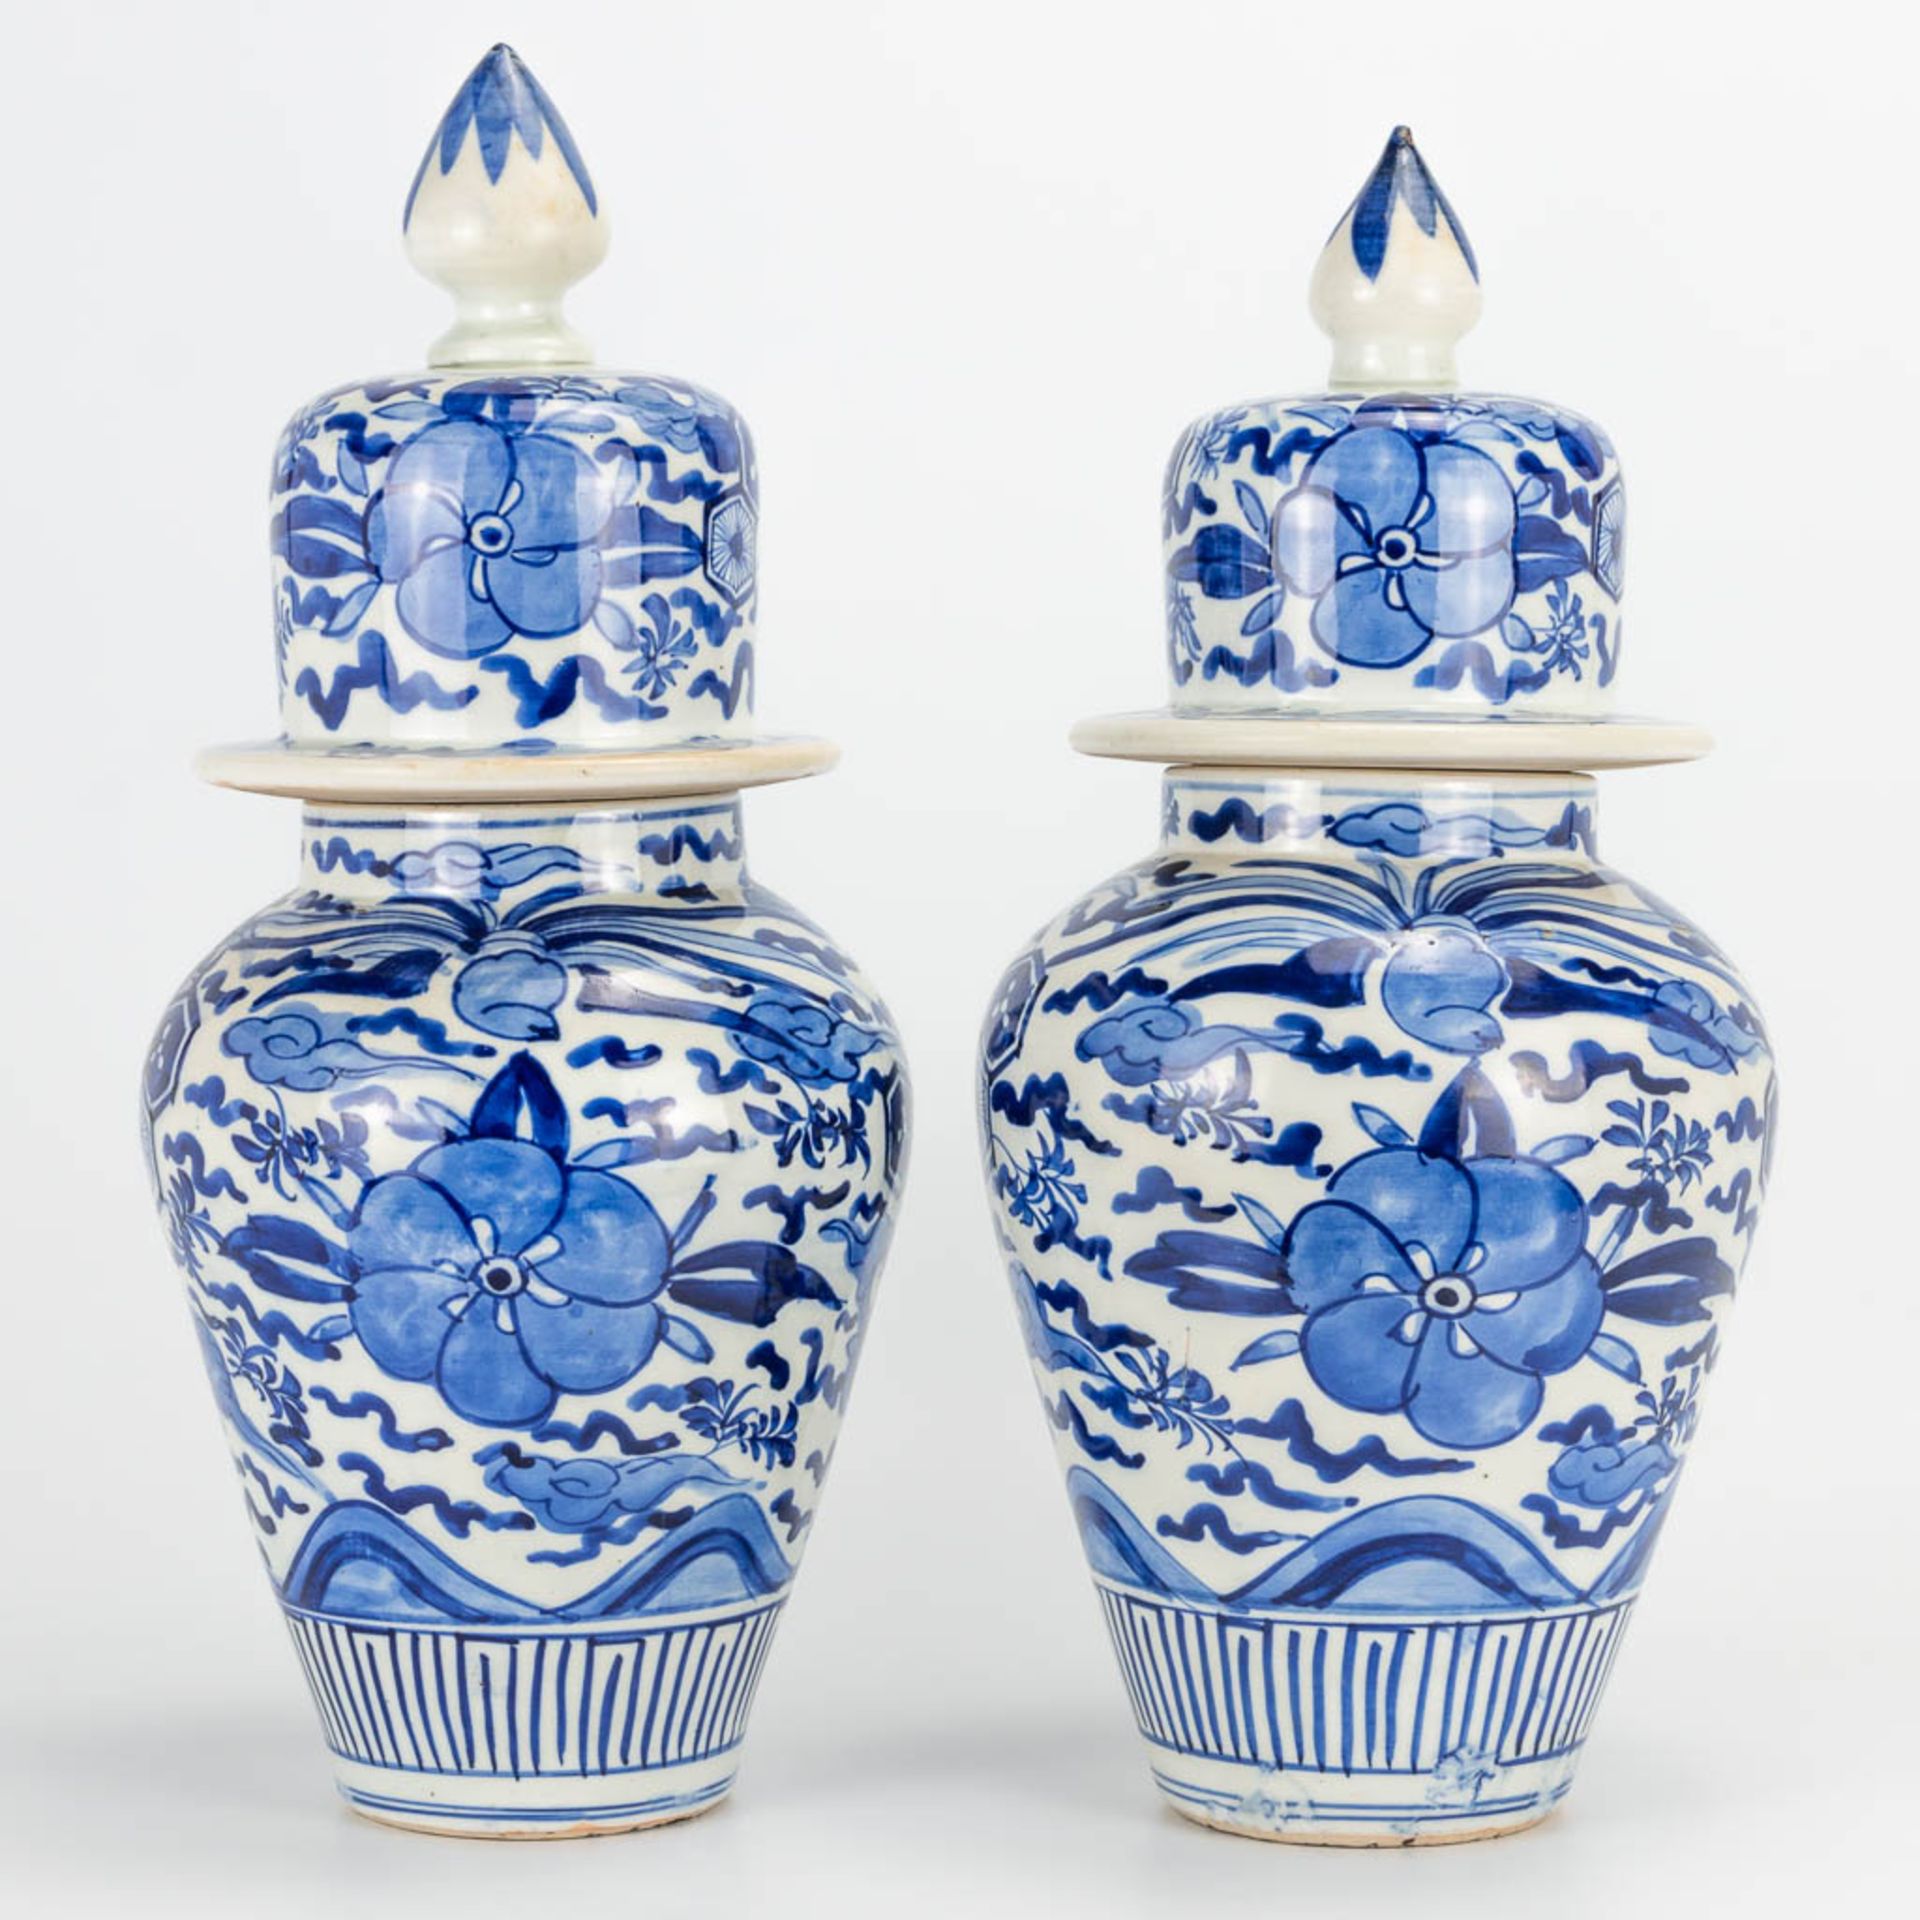 A pair of small Oriental vases wit lid, blue-white floral decor. (40 x 20 cm) - Bild 3 aus 20